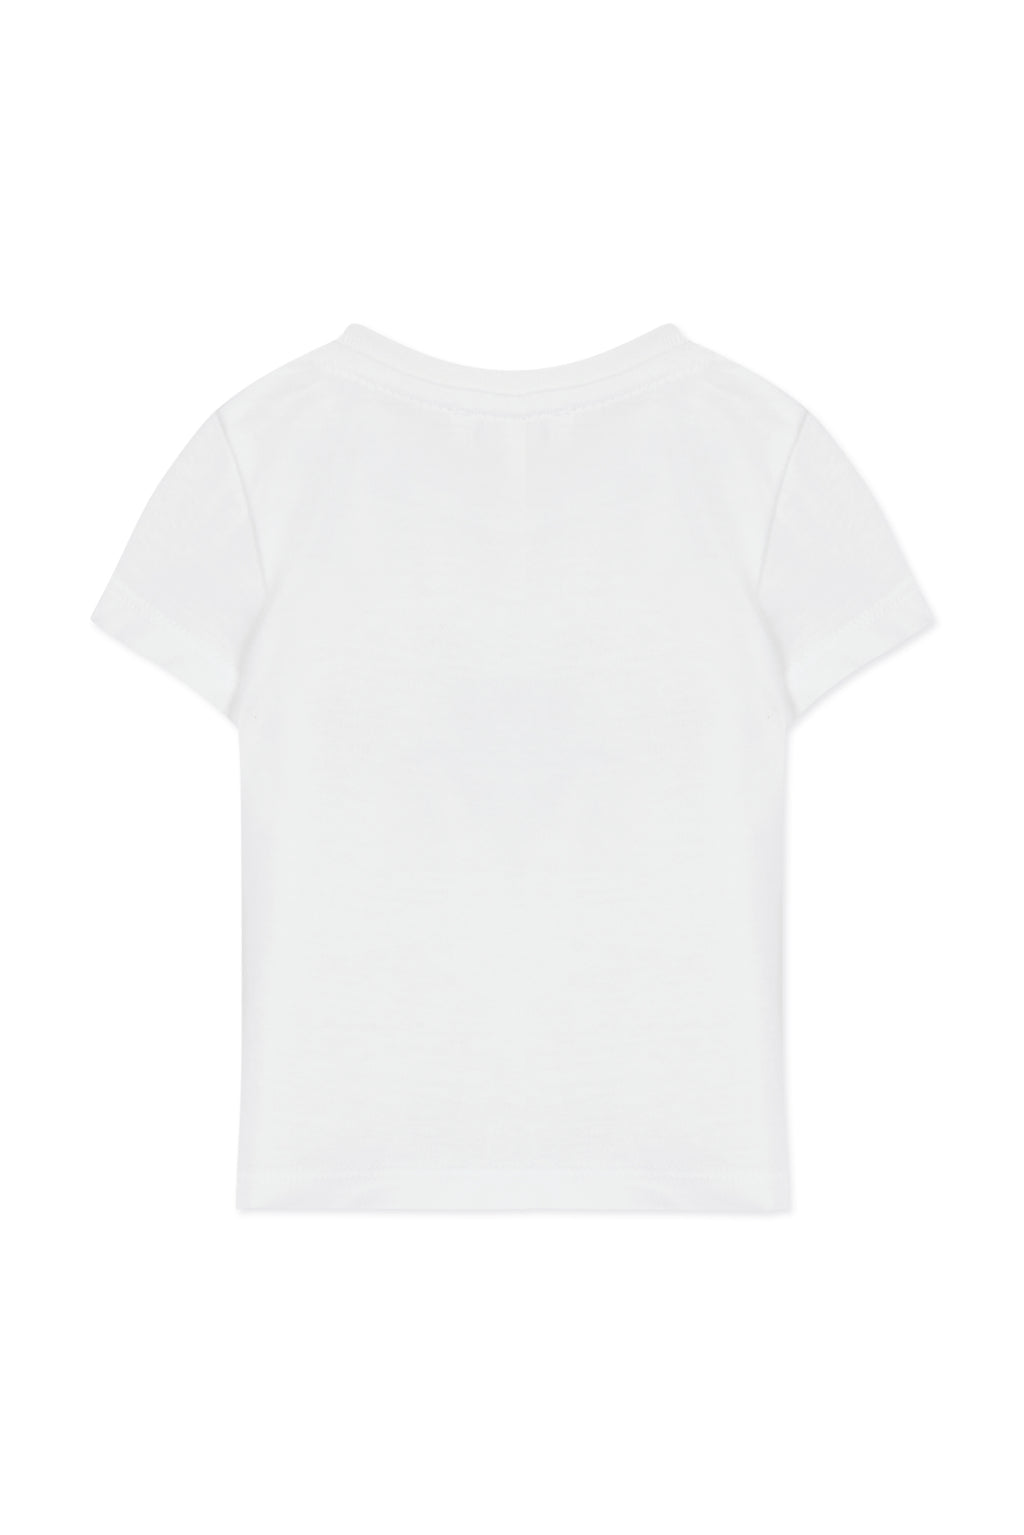 T -Shirt - Weiss Igel